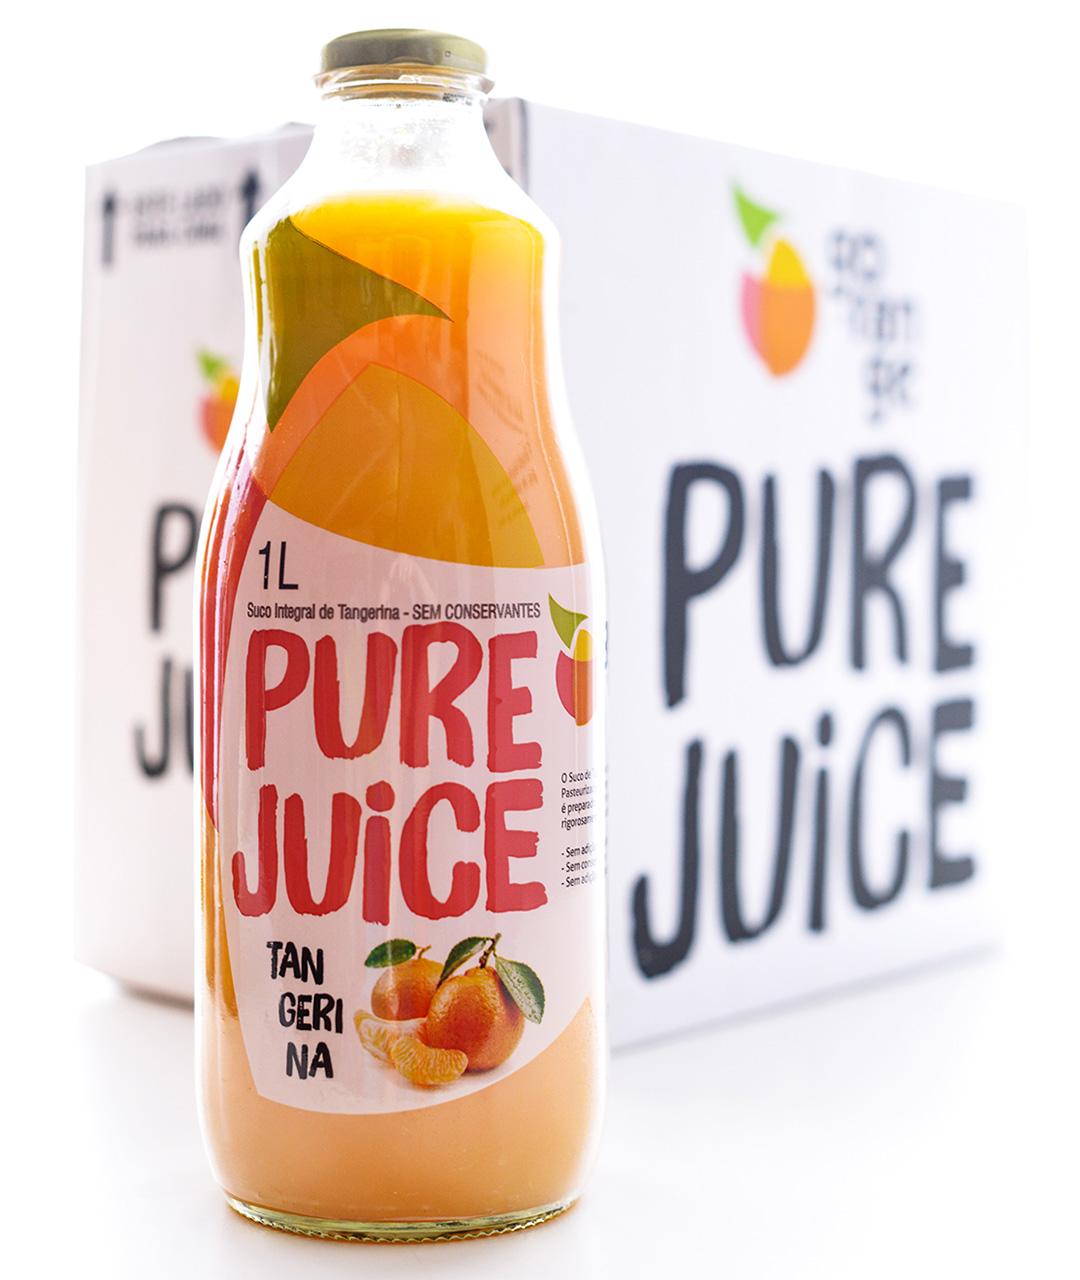 Pure Juice